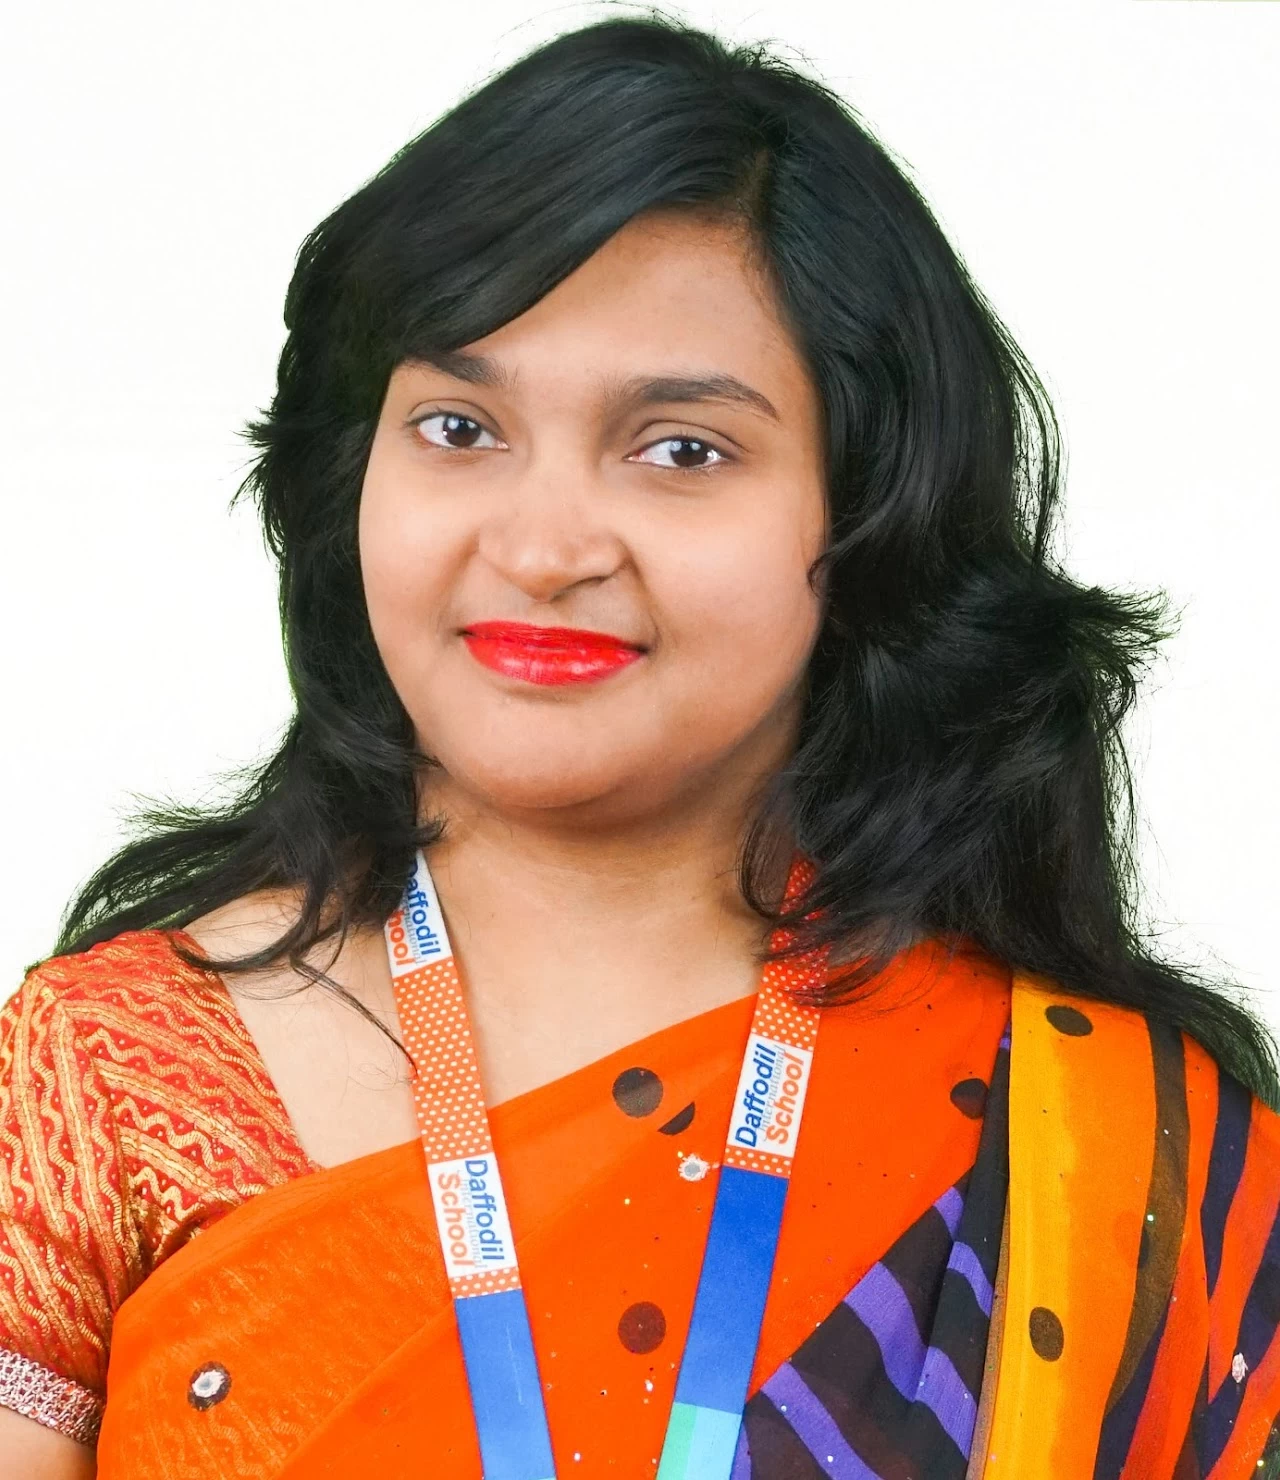 Ms. Sajeda Khanam